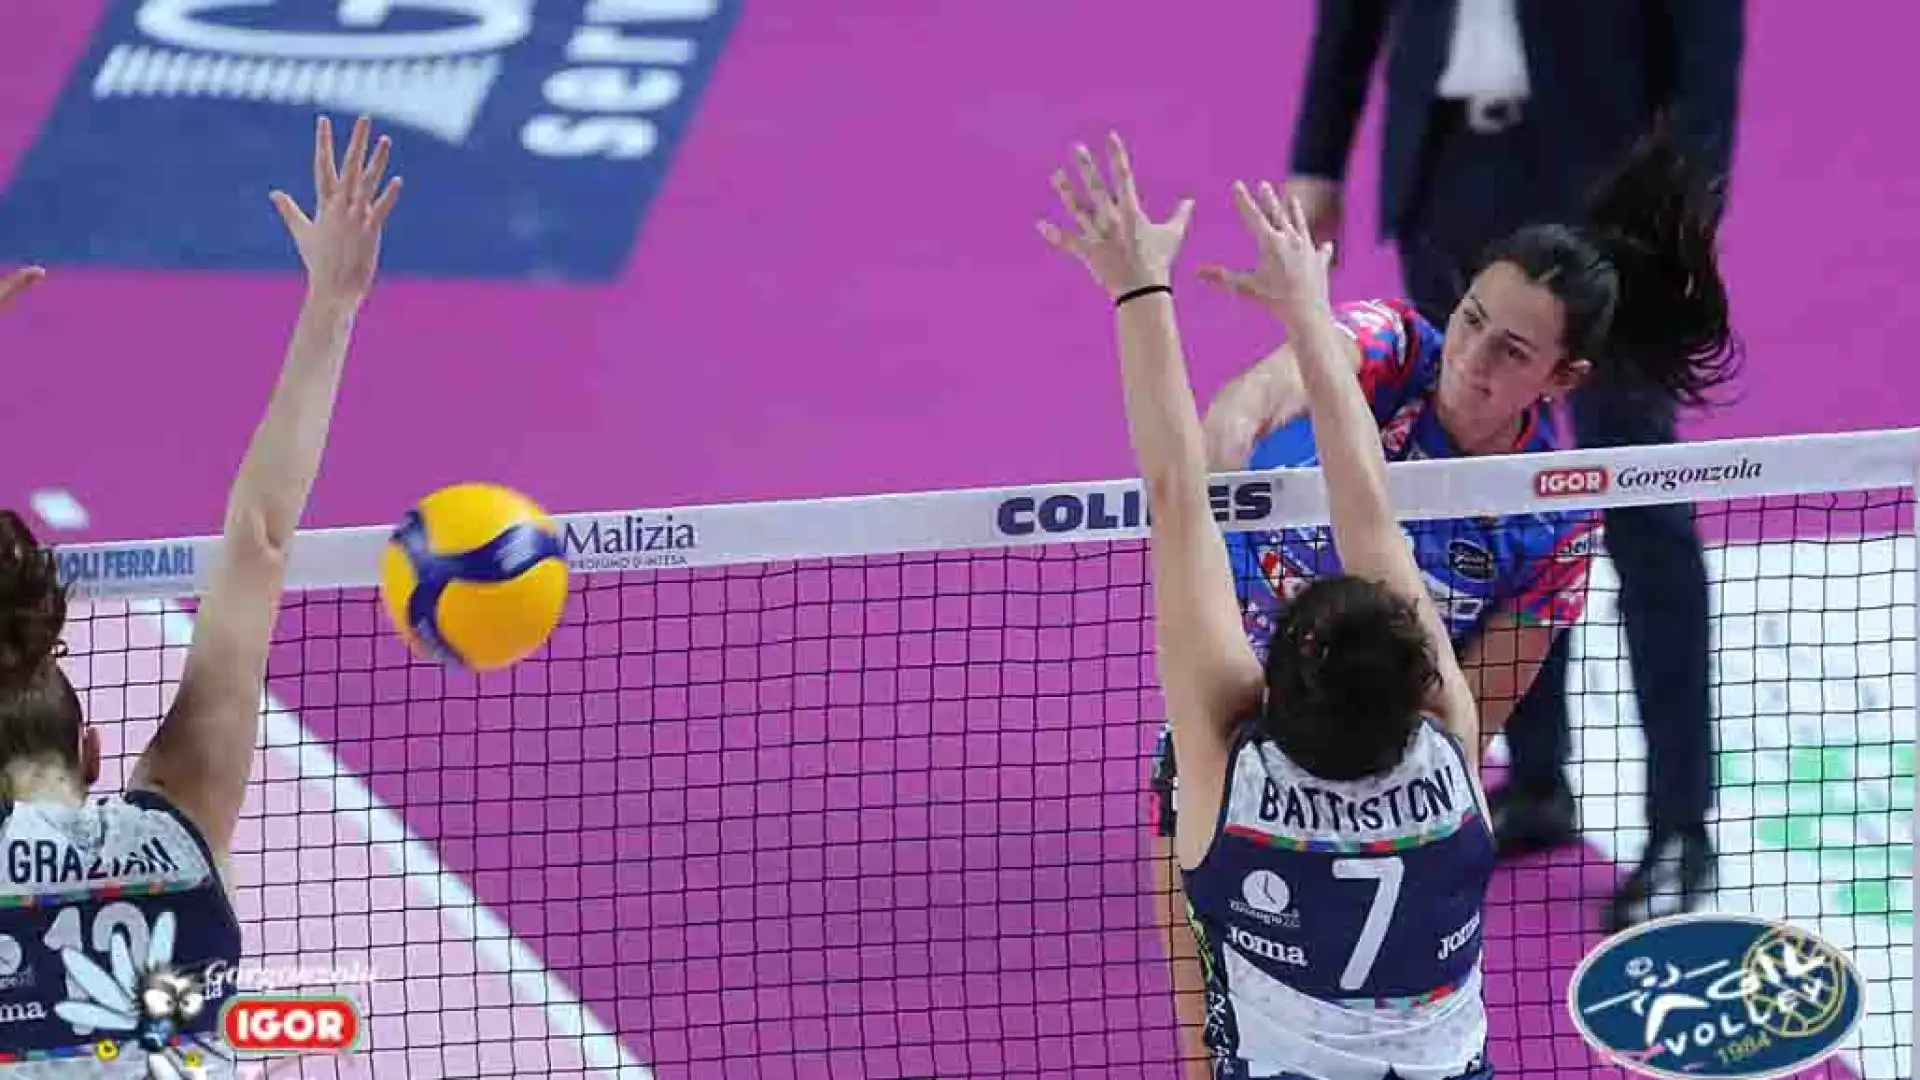 Nell'altro anticipo del campionato maggiore femminile, Vallefoglia ha sconfitto Trento in trasferta con un netto 3-0 (26-24, 25-18, 25-14), con 19 punti di Dehoog.